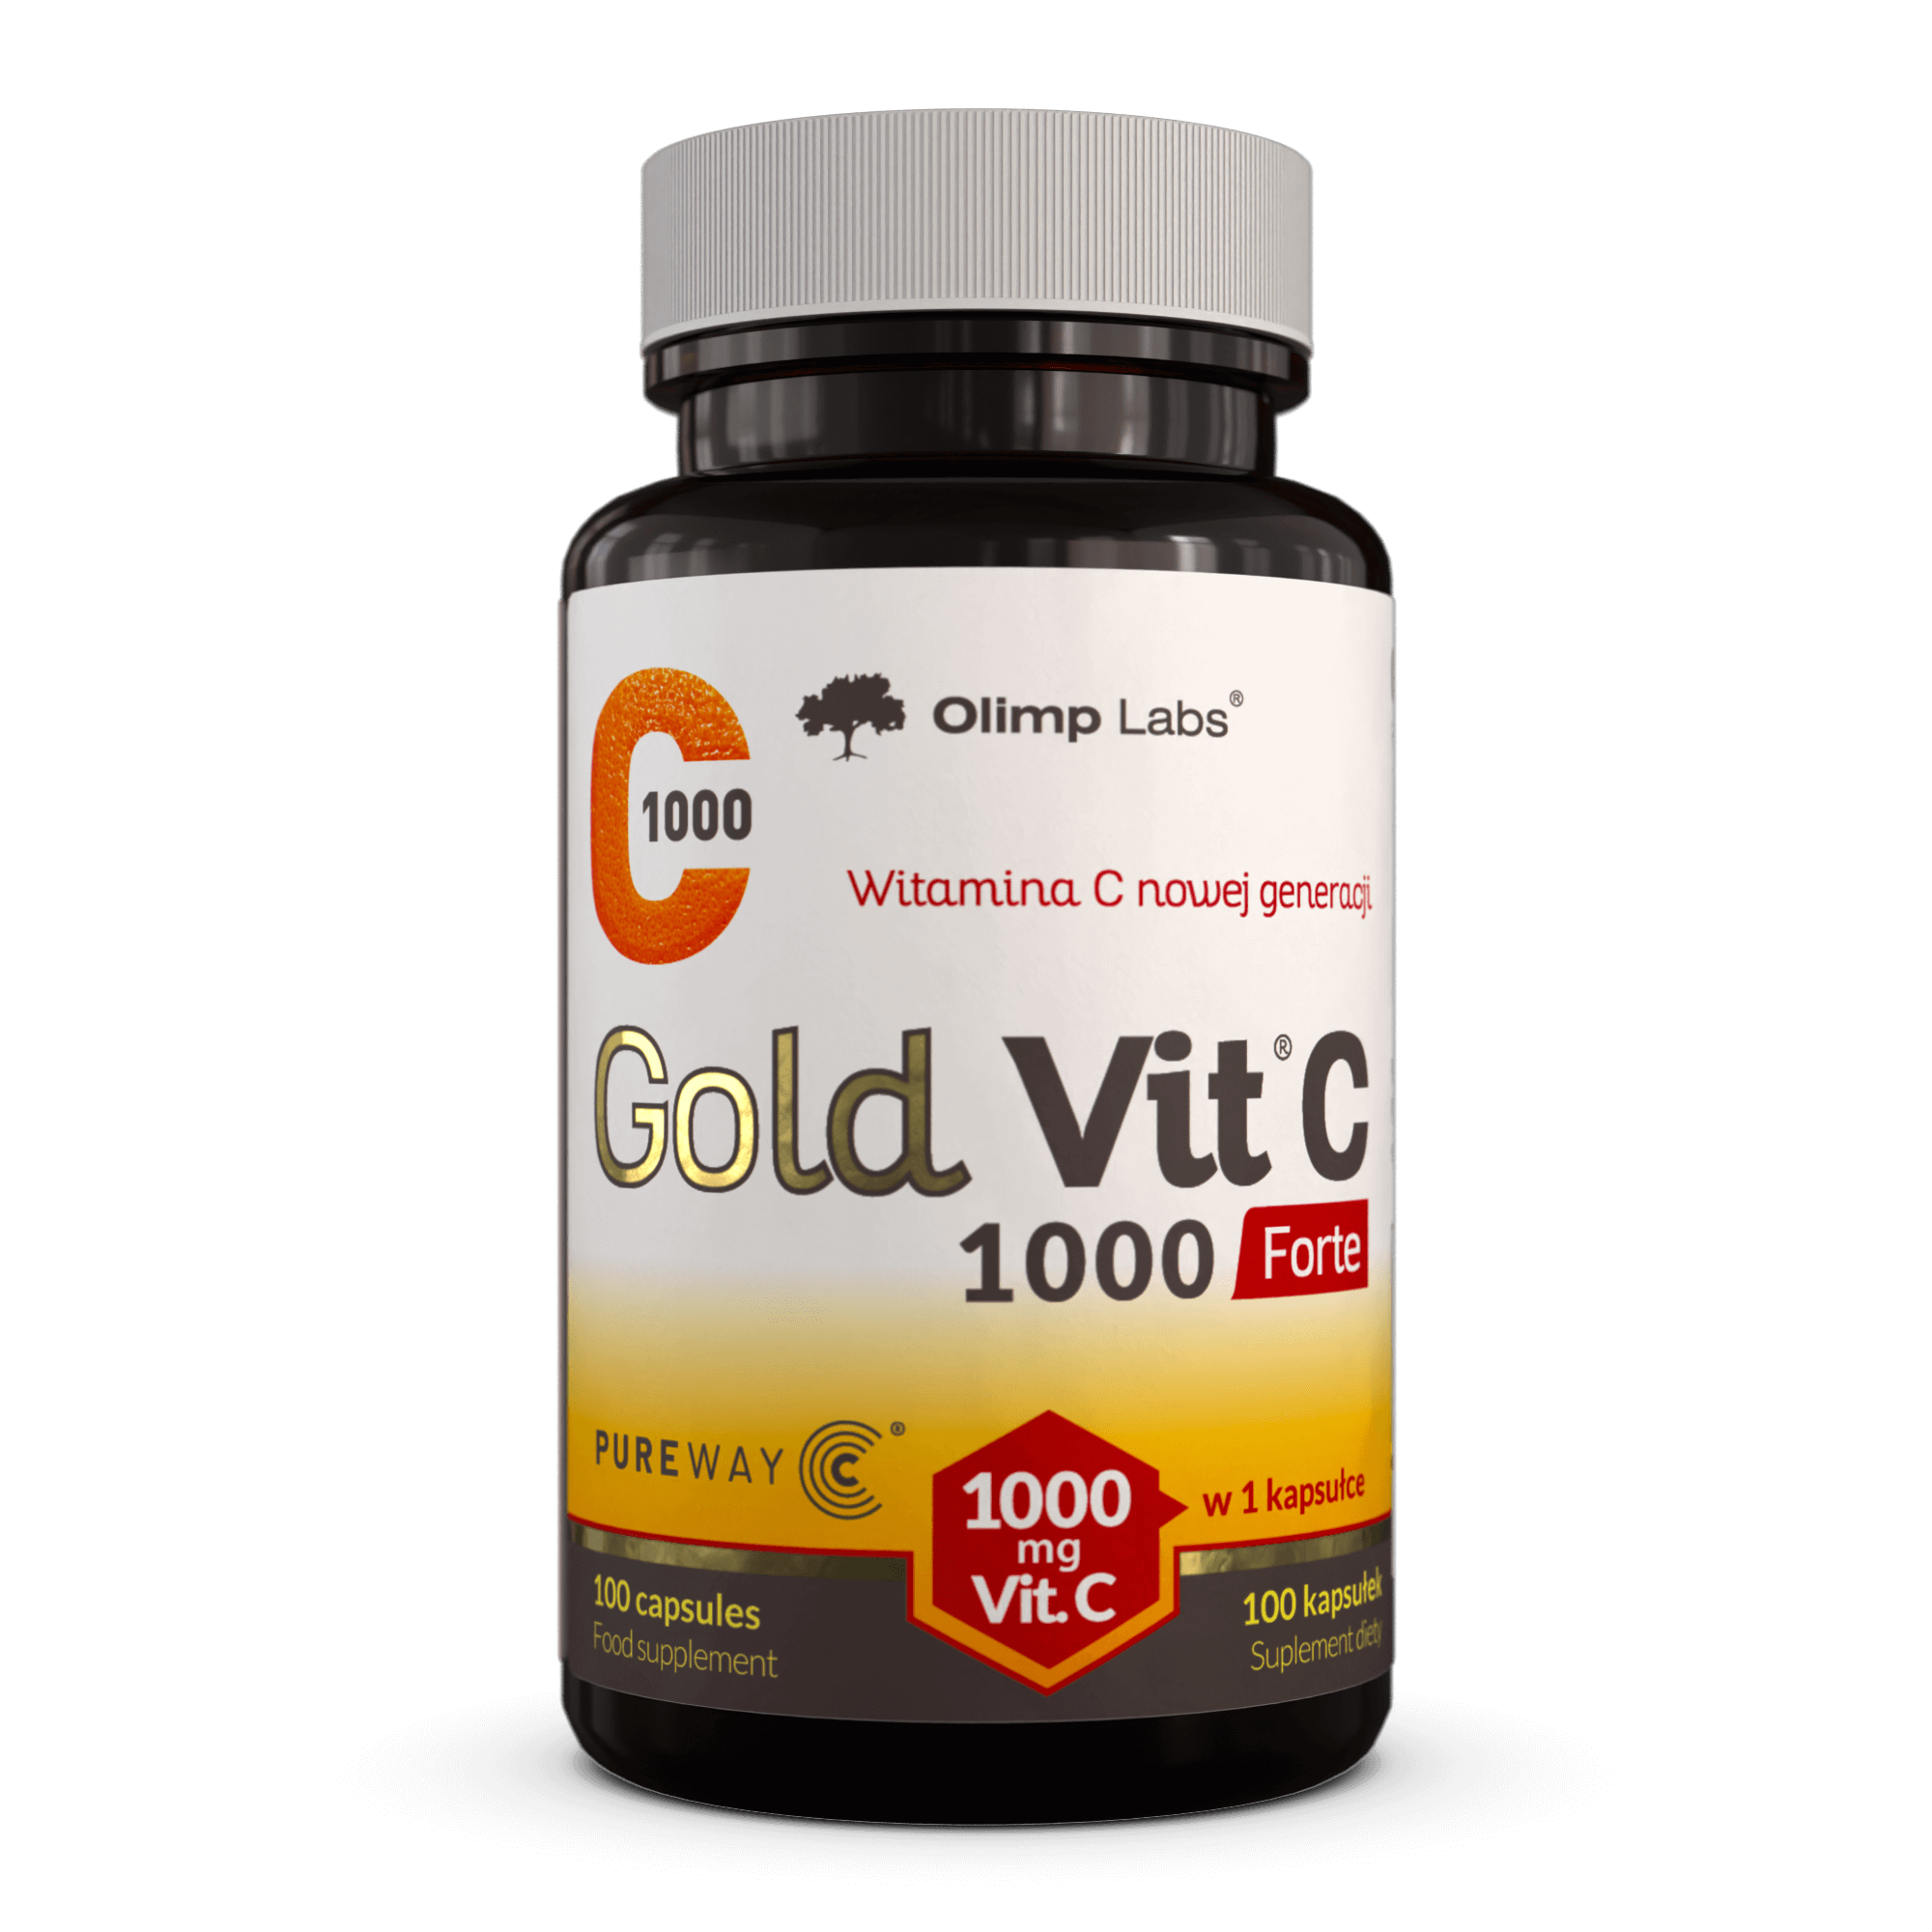 Gold Vit C 1000 Forte